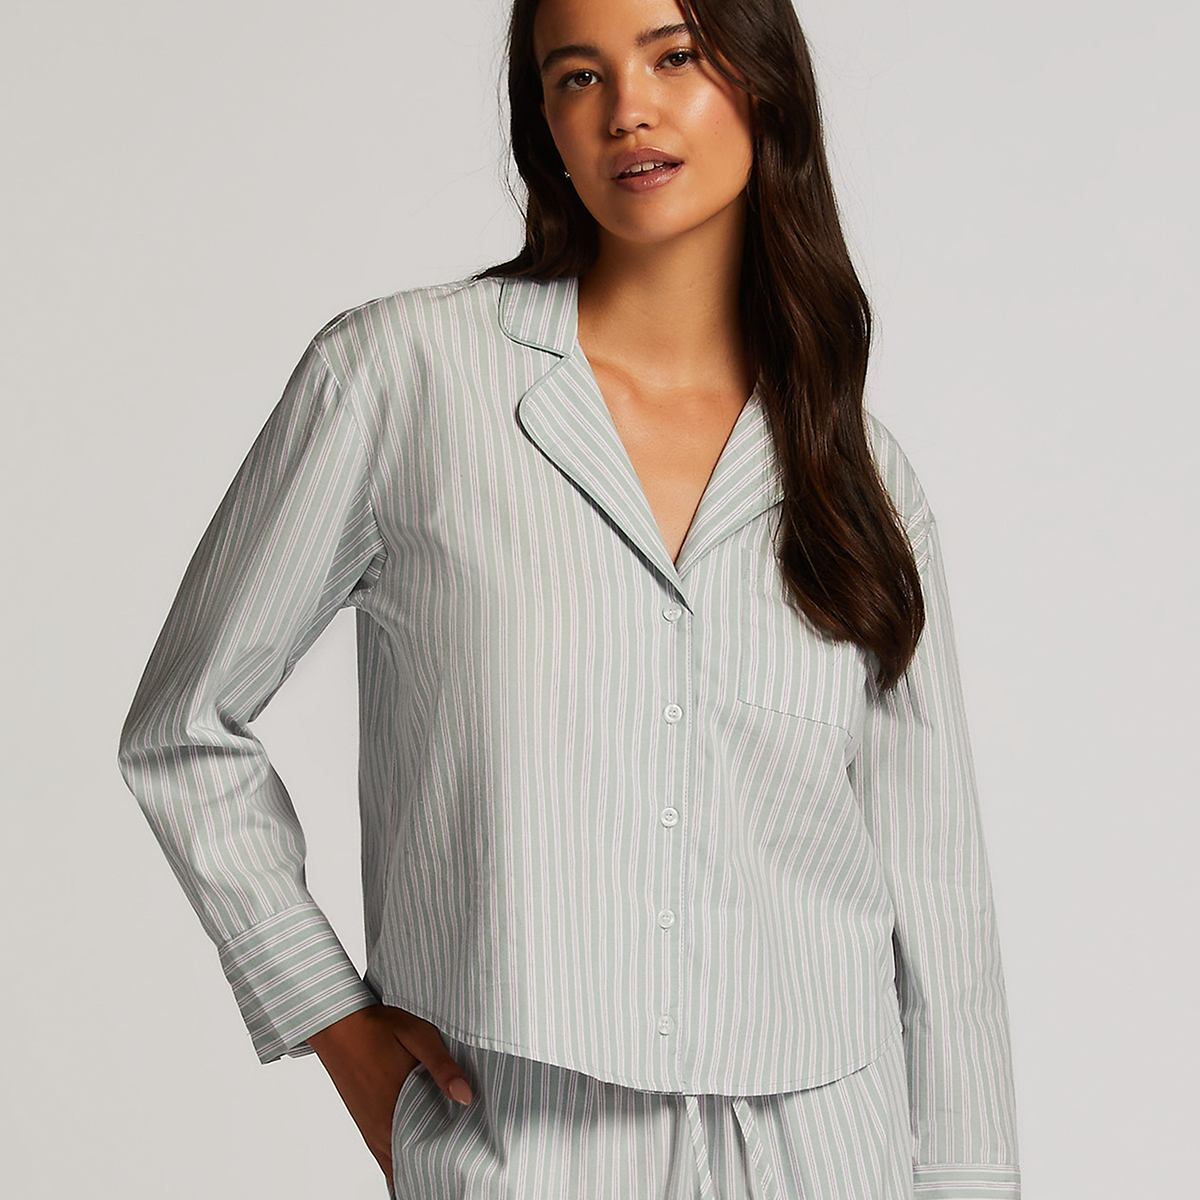 Hunkemöller Cotton Stripe Nachthemd, Farbe: Harbor Gray, Größe: XL, Damen von Hunkemöller